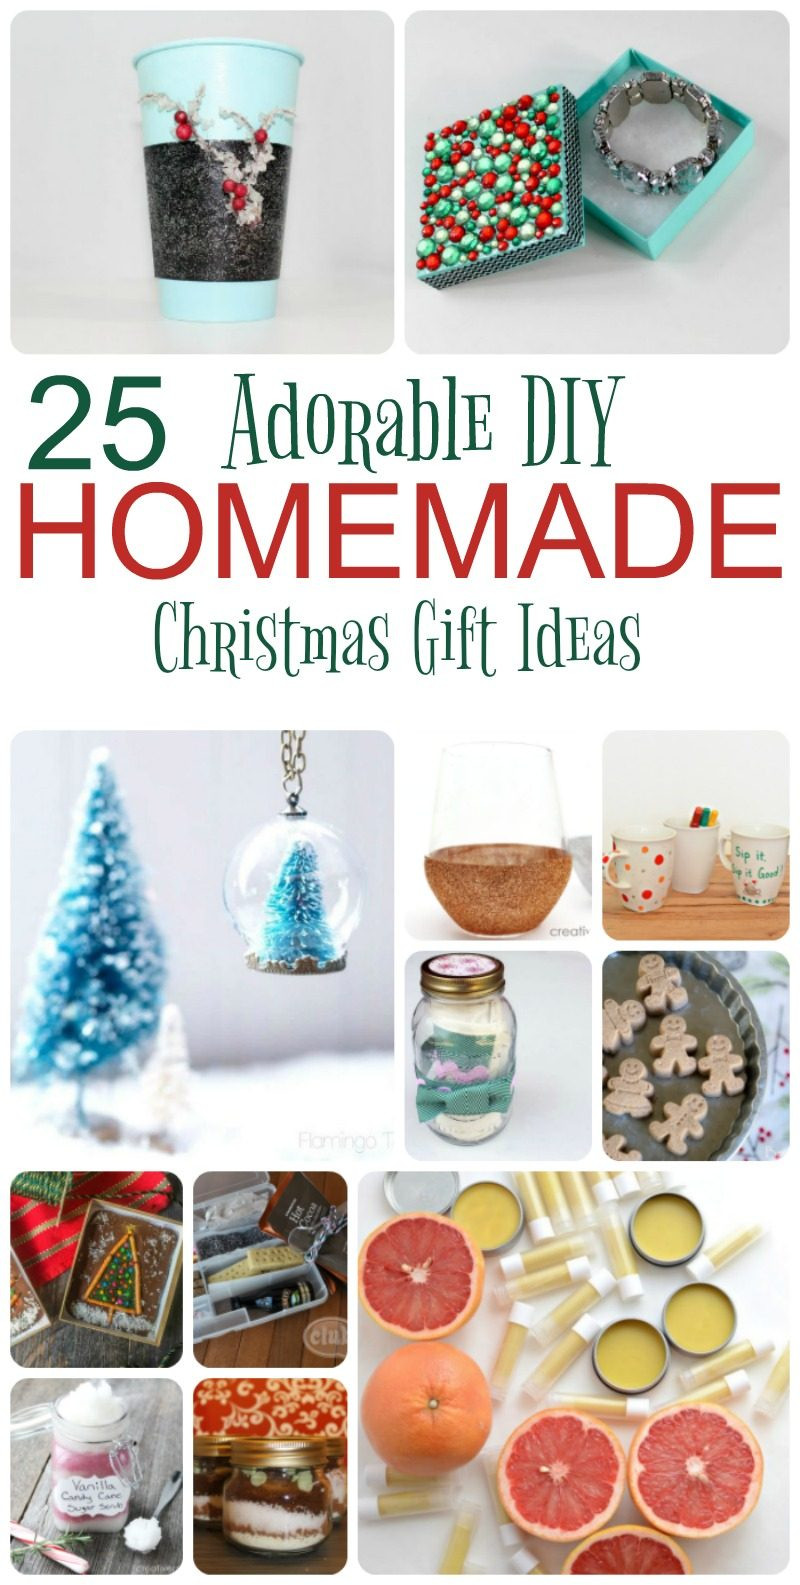 Christmas Gift Ideas For Kids To Make
 25 Adorable Homemade Gifts to Make for Christmas Pretty